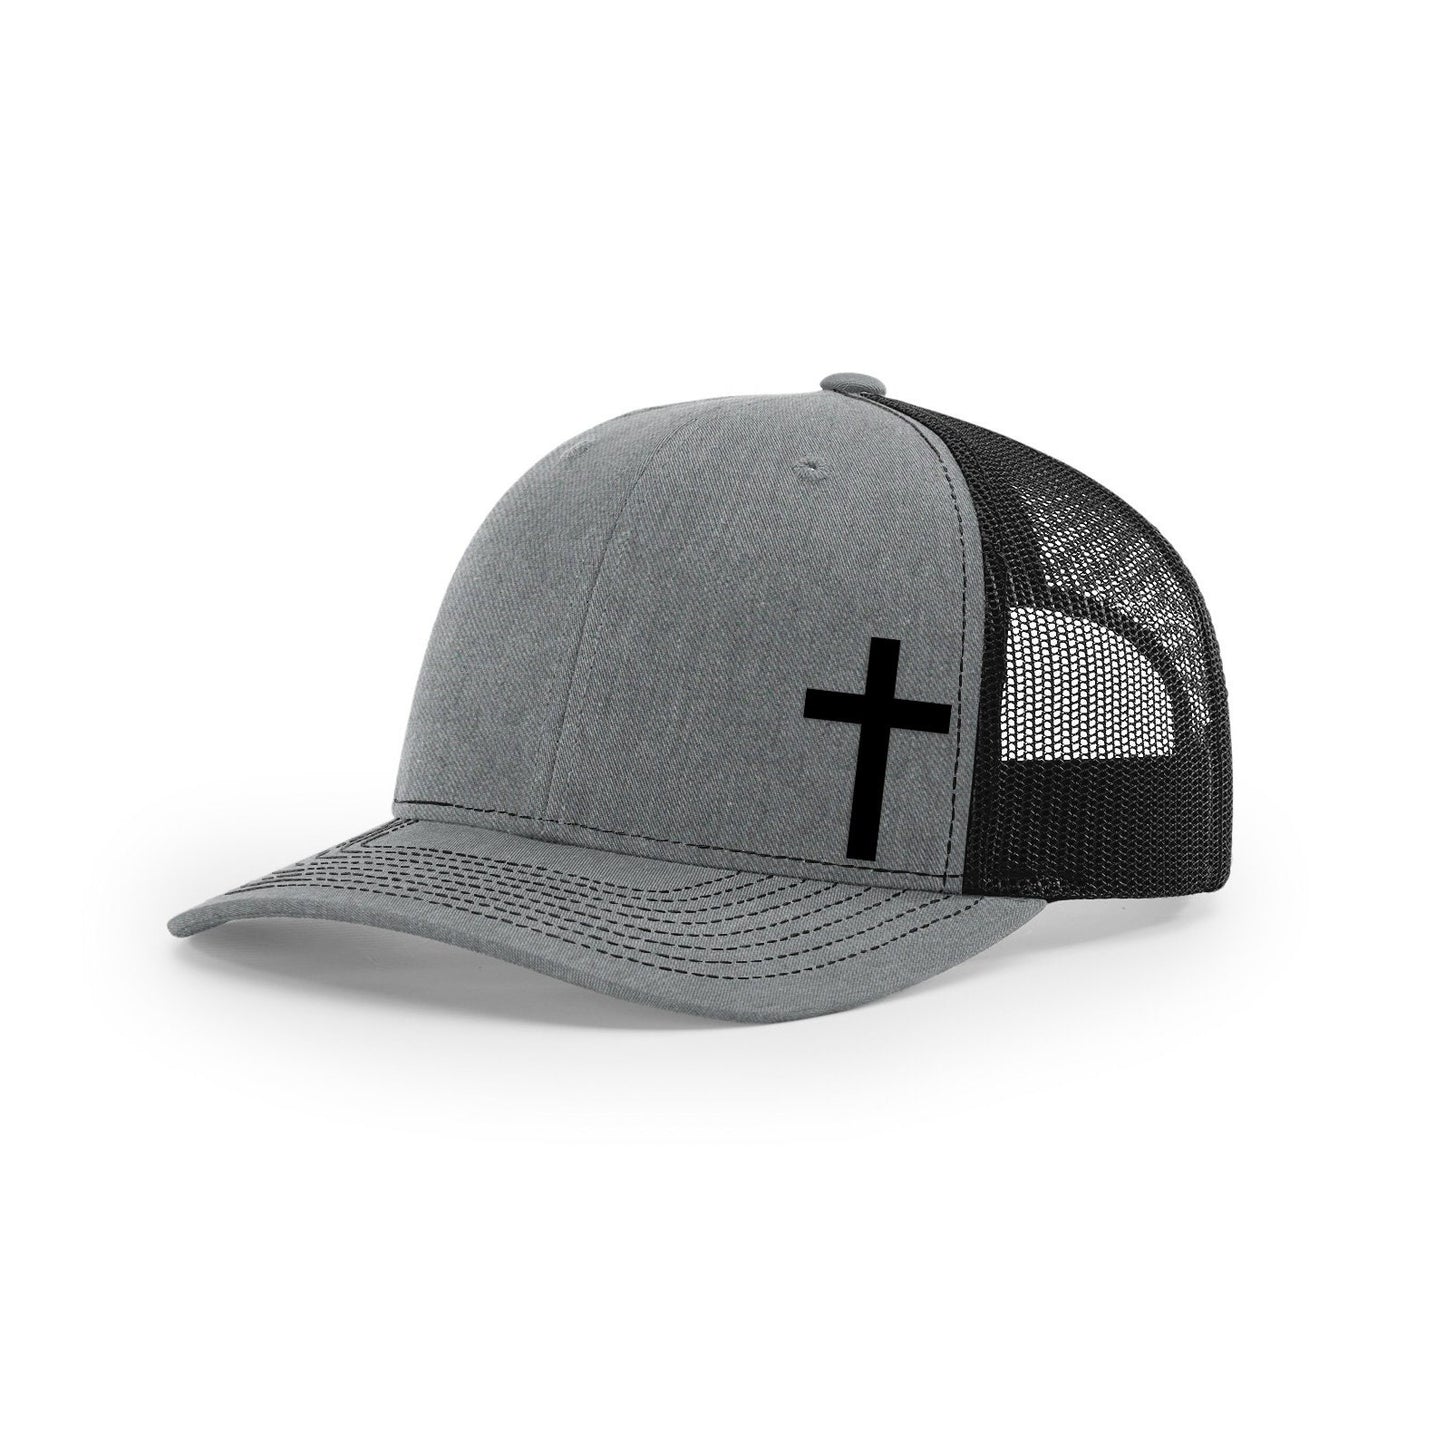 Christian Cross Richardson 112 Trucker Mesh Back Hat